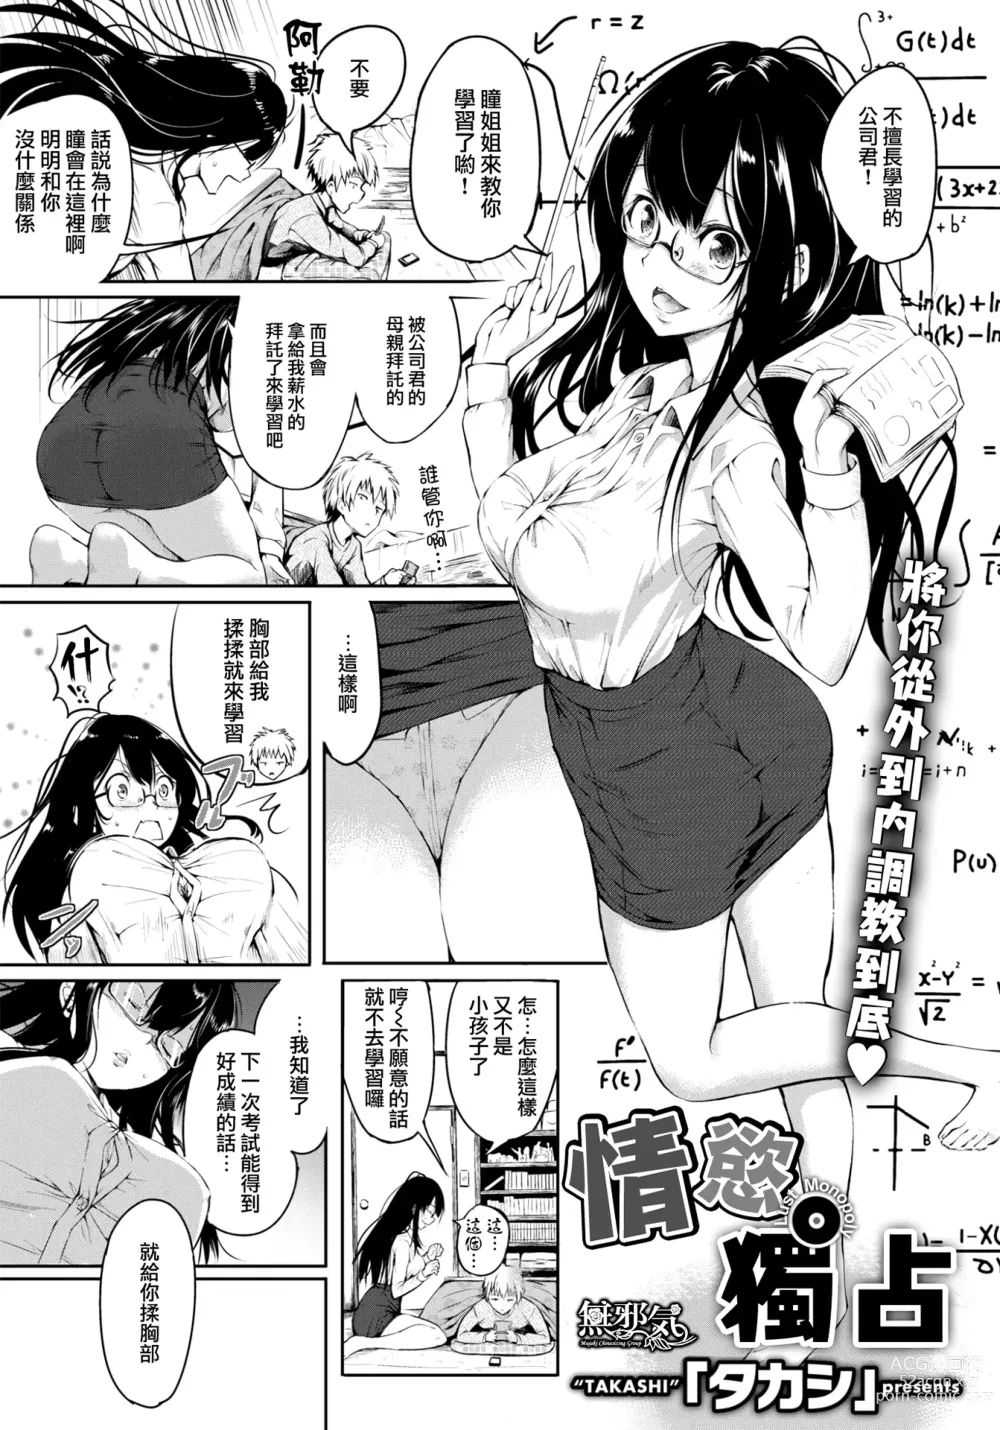 Page 1 of manga 劣情モノポリー